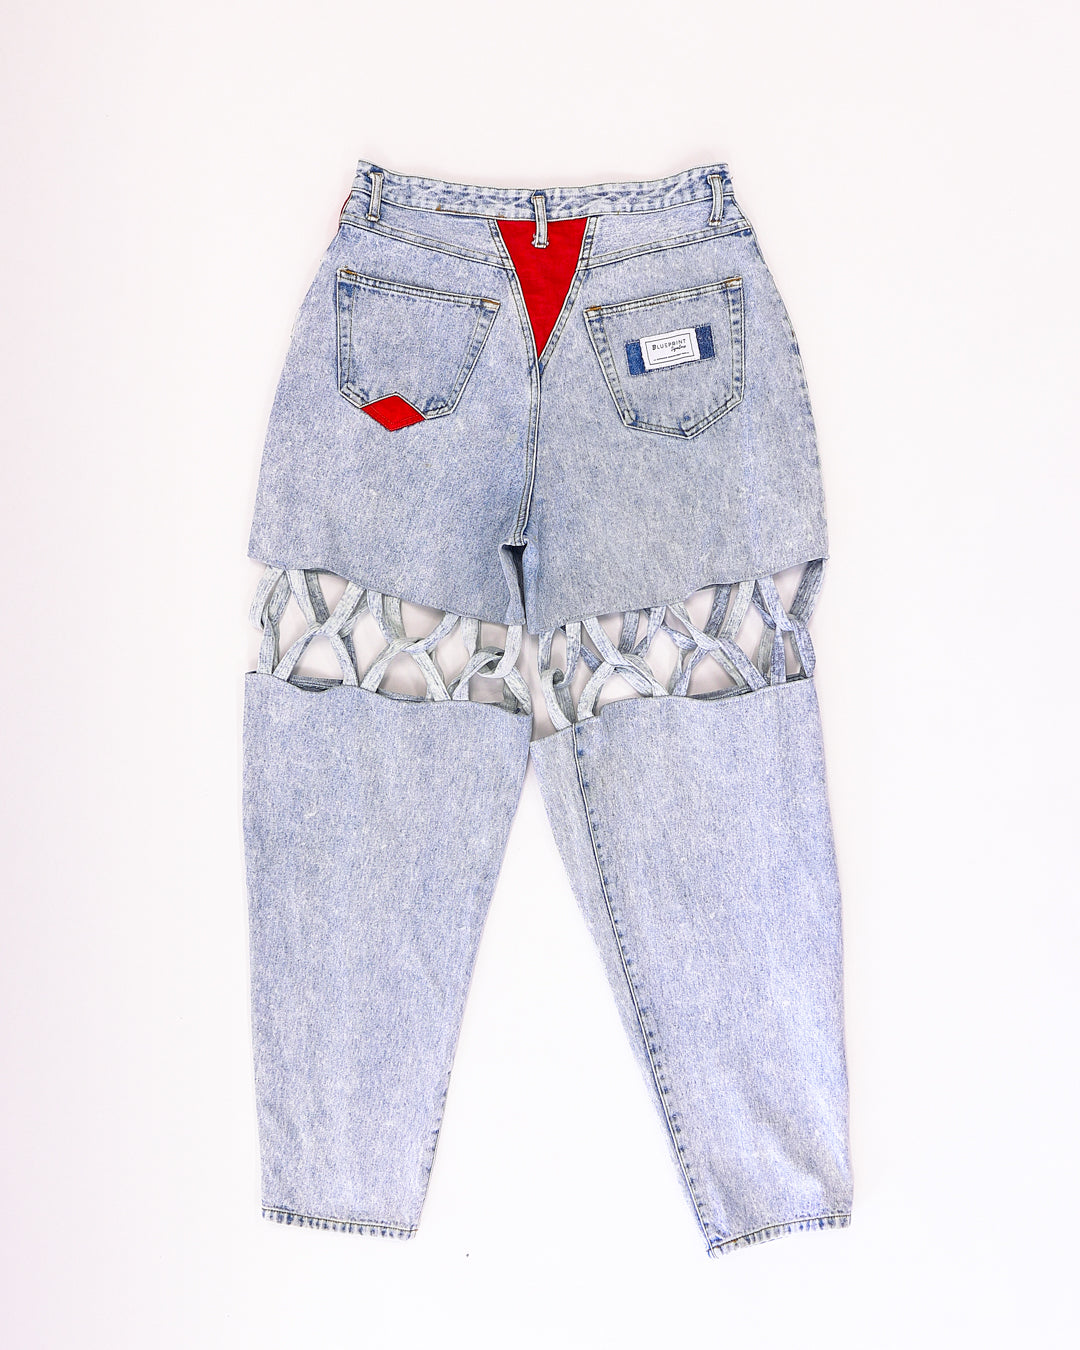 Criss Cross Jeans - Vintage (size 12)